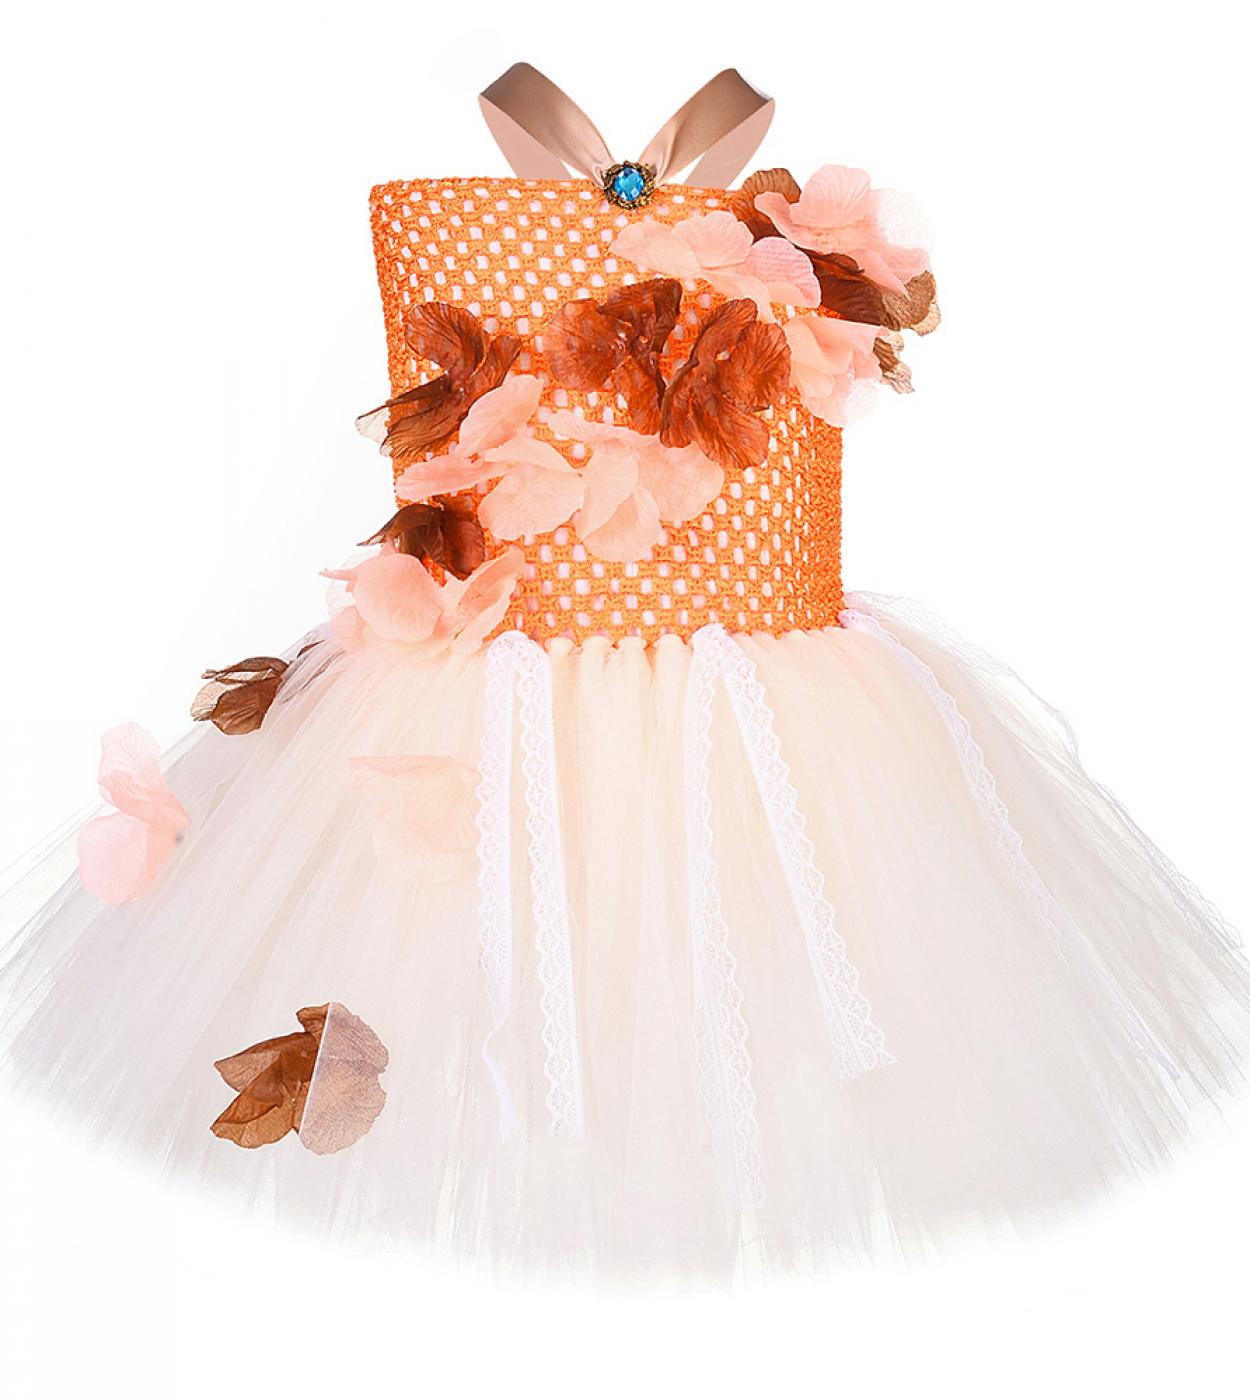 Princess  Costume For Girls Christmas Tutu Dress Children Halloween Costumes For Kids Toddler Girl Birthday Dresses Gift